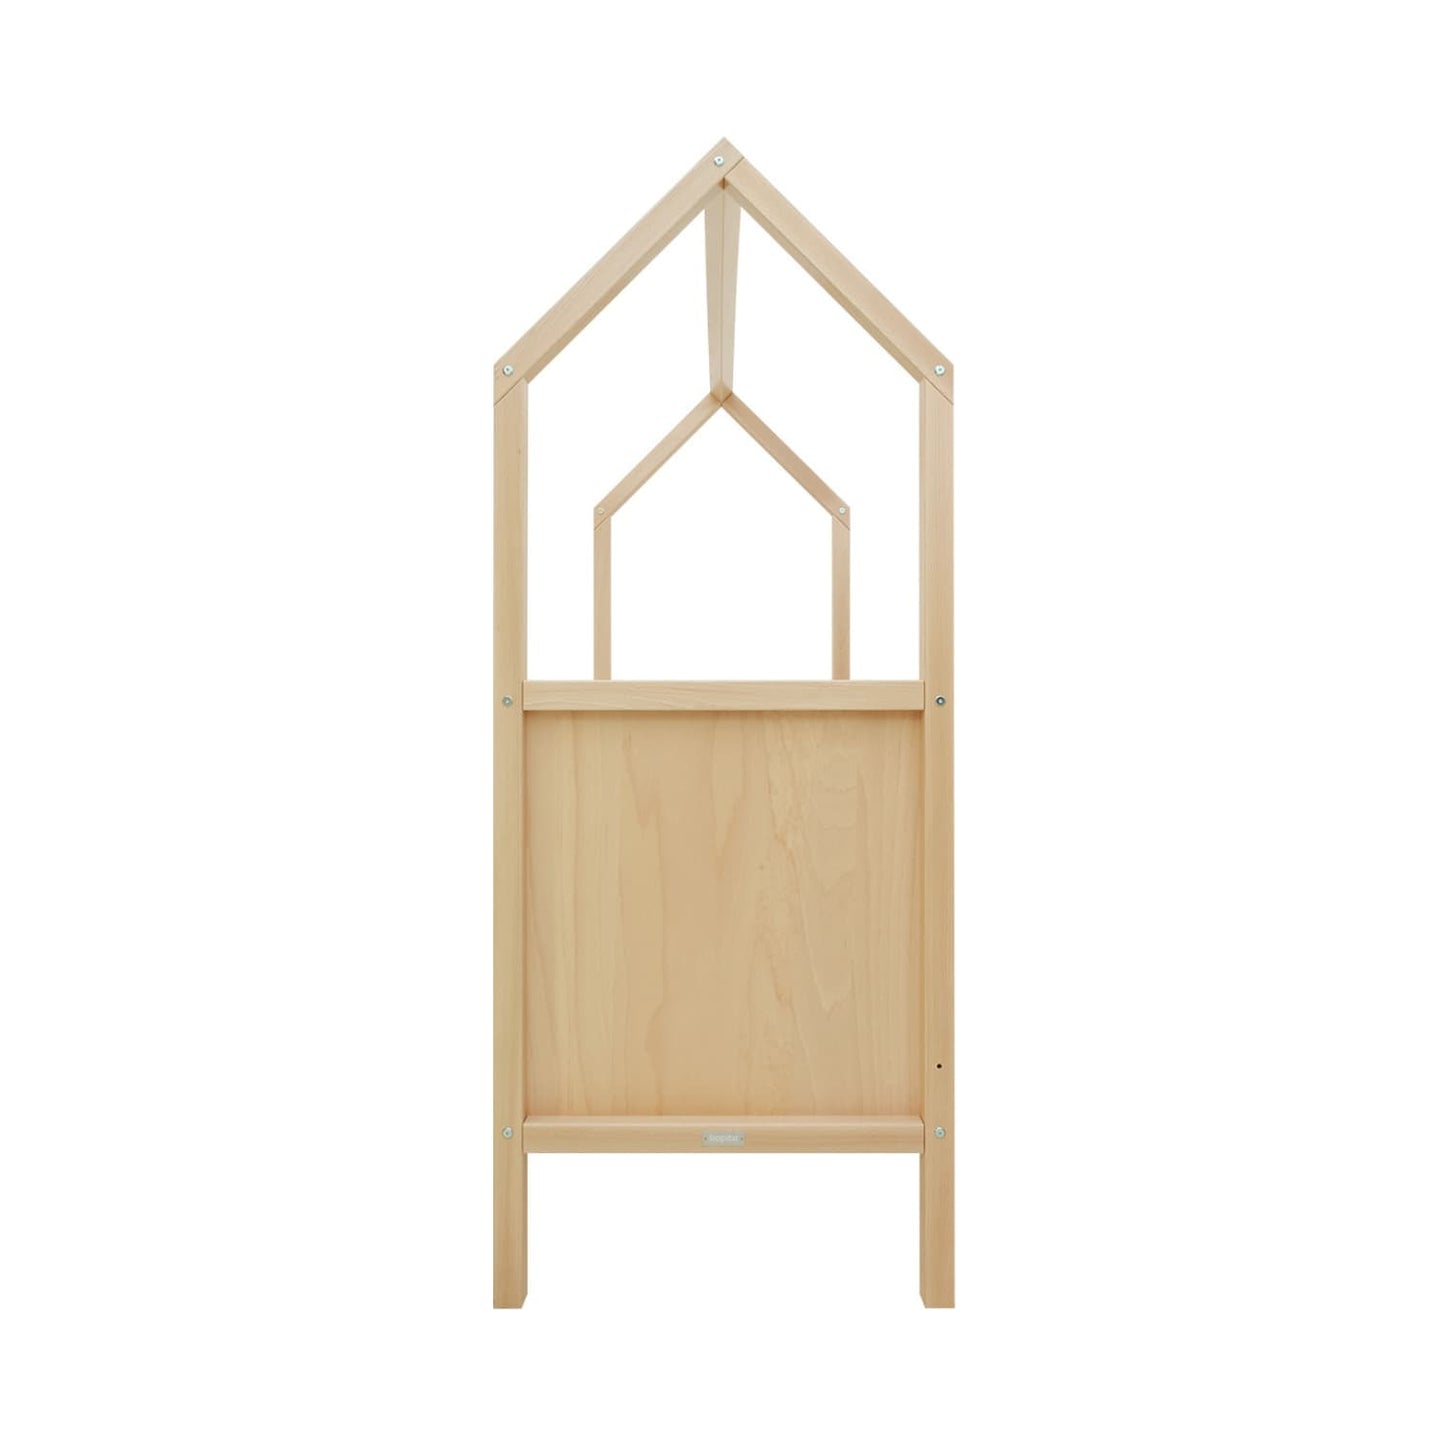 lit bébé cabane évolutif 60x120 cm bois naturel avec sommier à hauteur ajustable